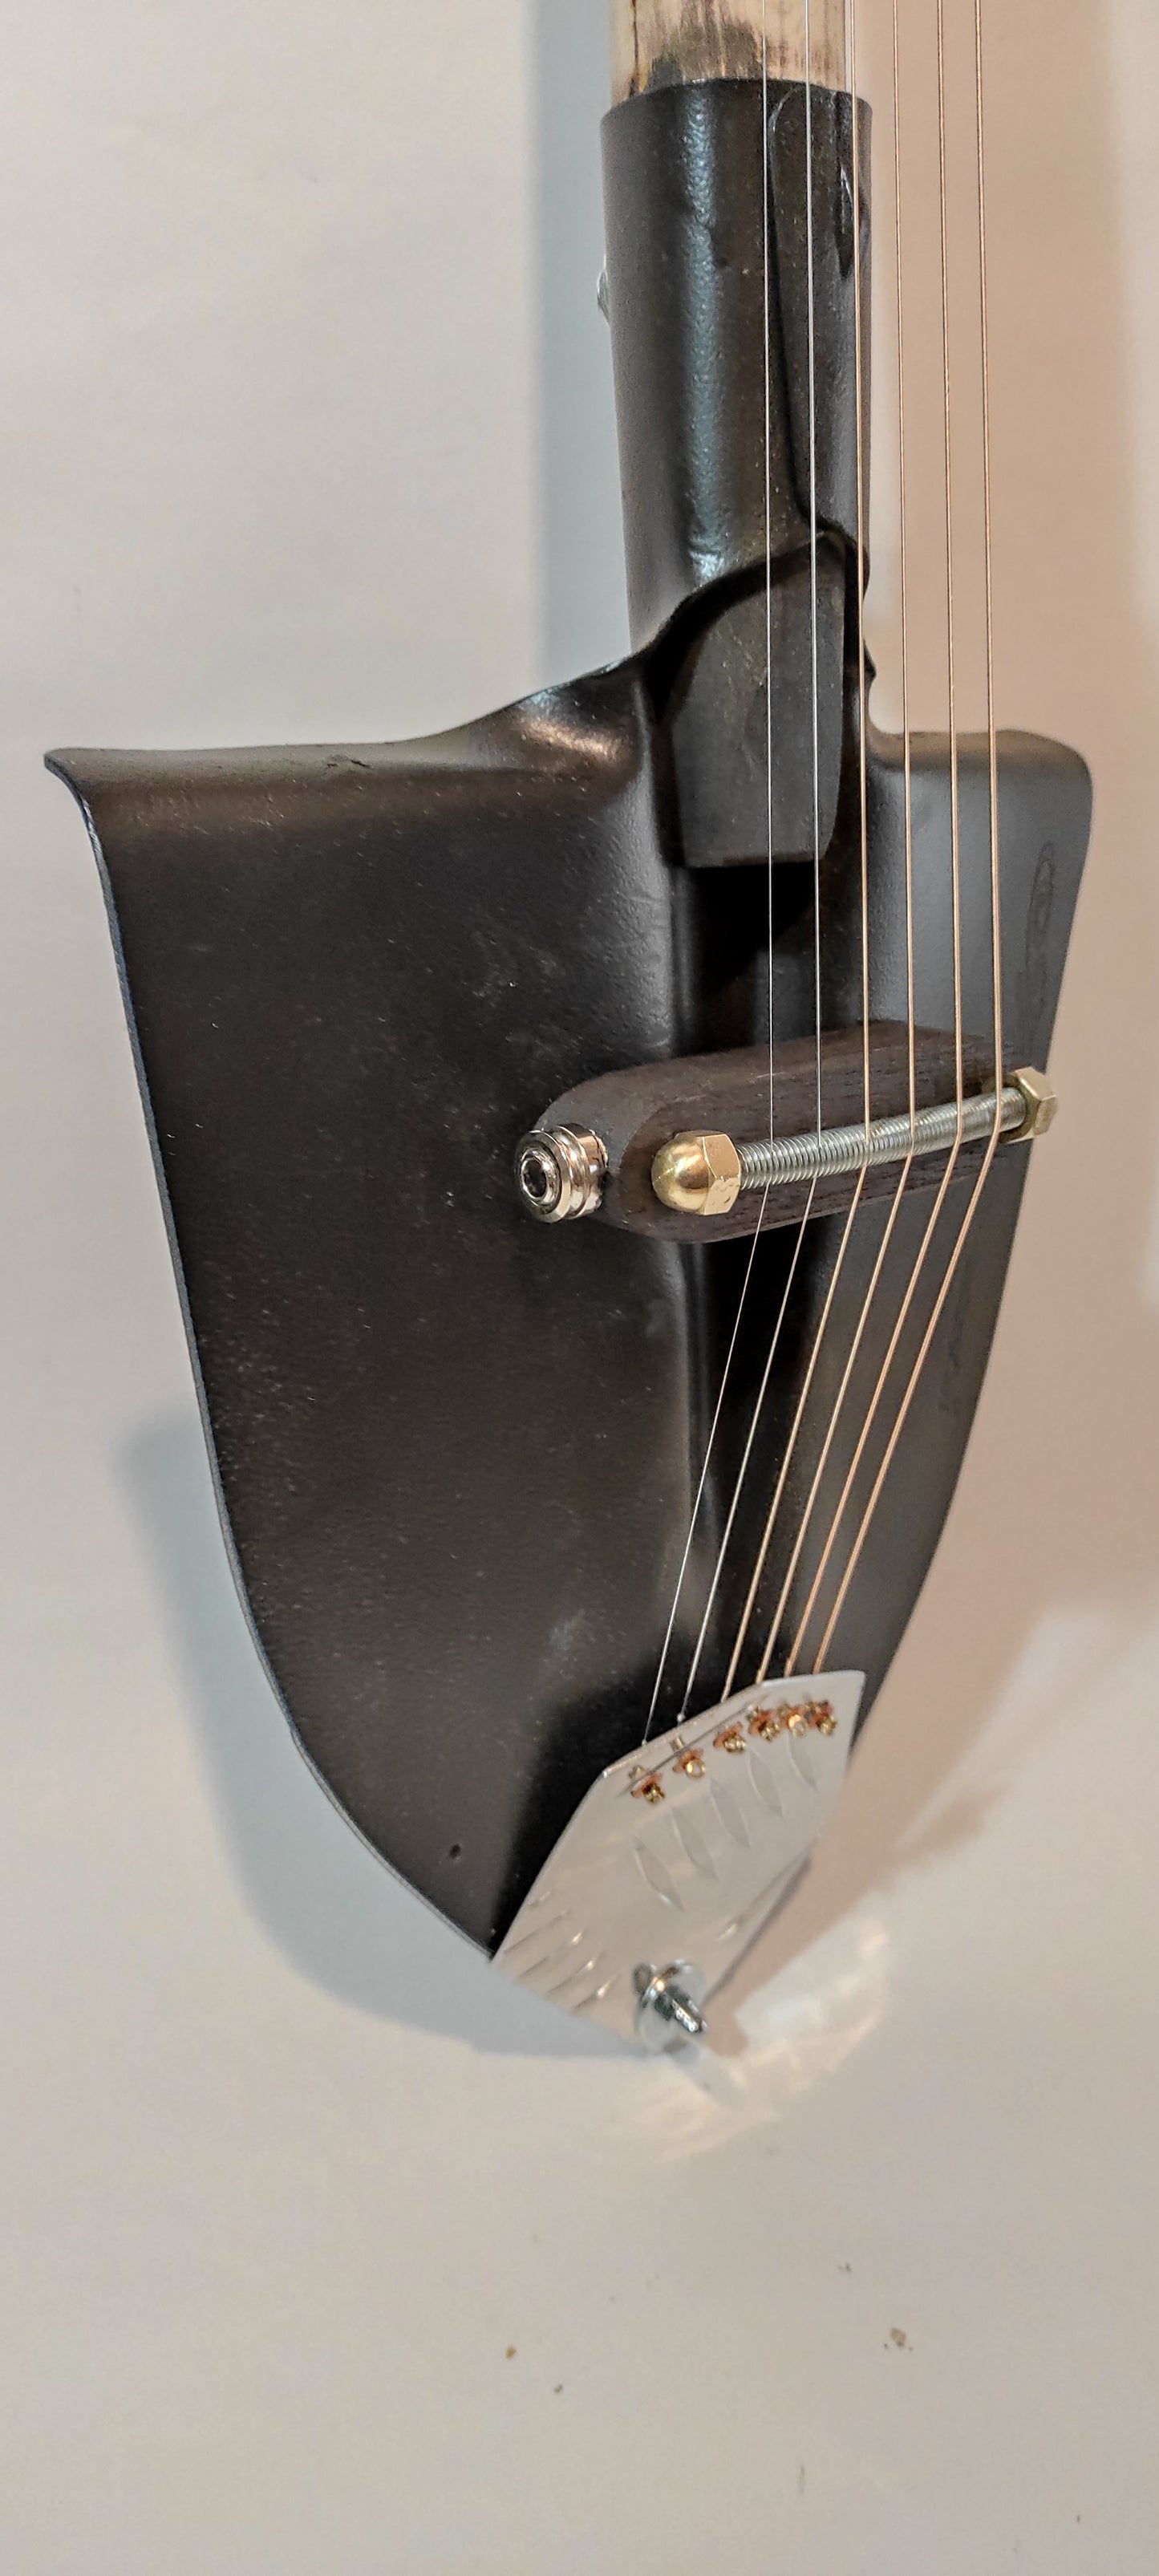 Guitar Handmade 6 strings lap steel guitar shovel for blues